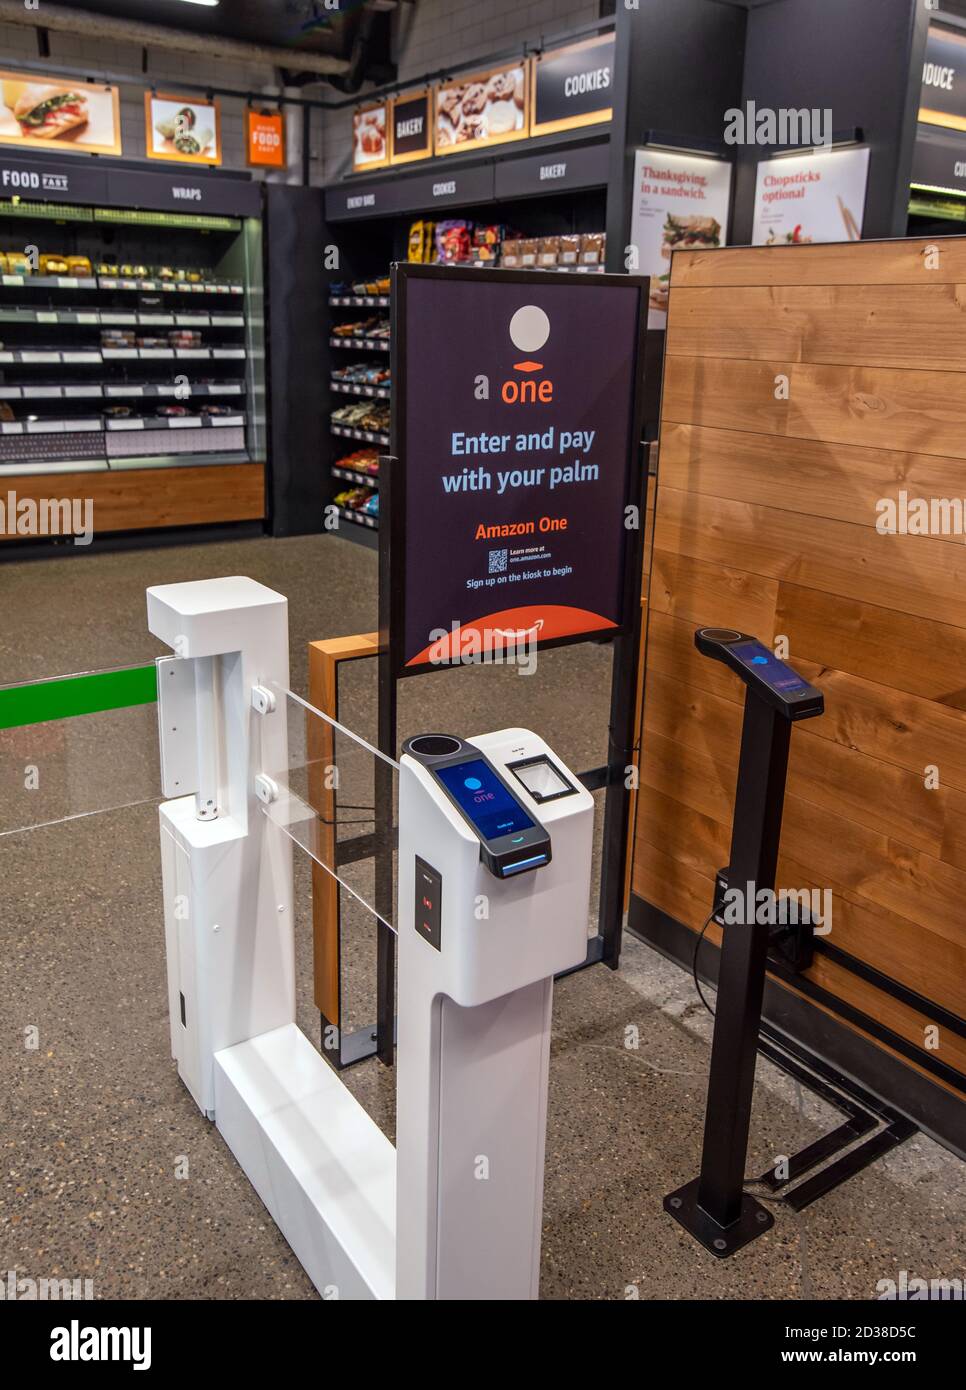 Seattle, Washington, EE.UU. – 7 de octubre de 2020 Amazon Go introduce los escáneres de palma para acceder y comprar artículos sin pagar Foto de stock